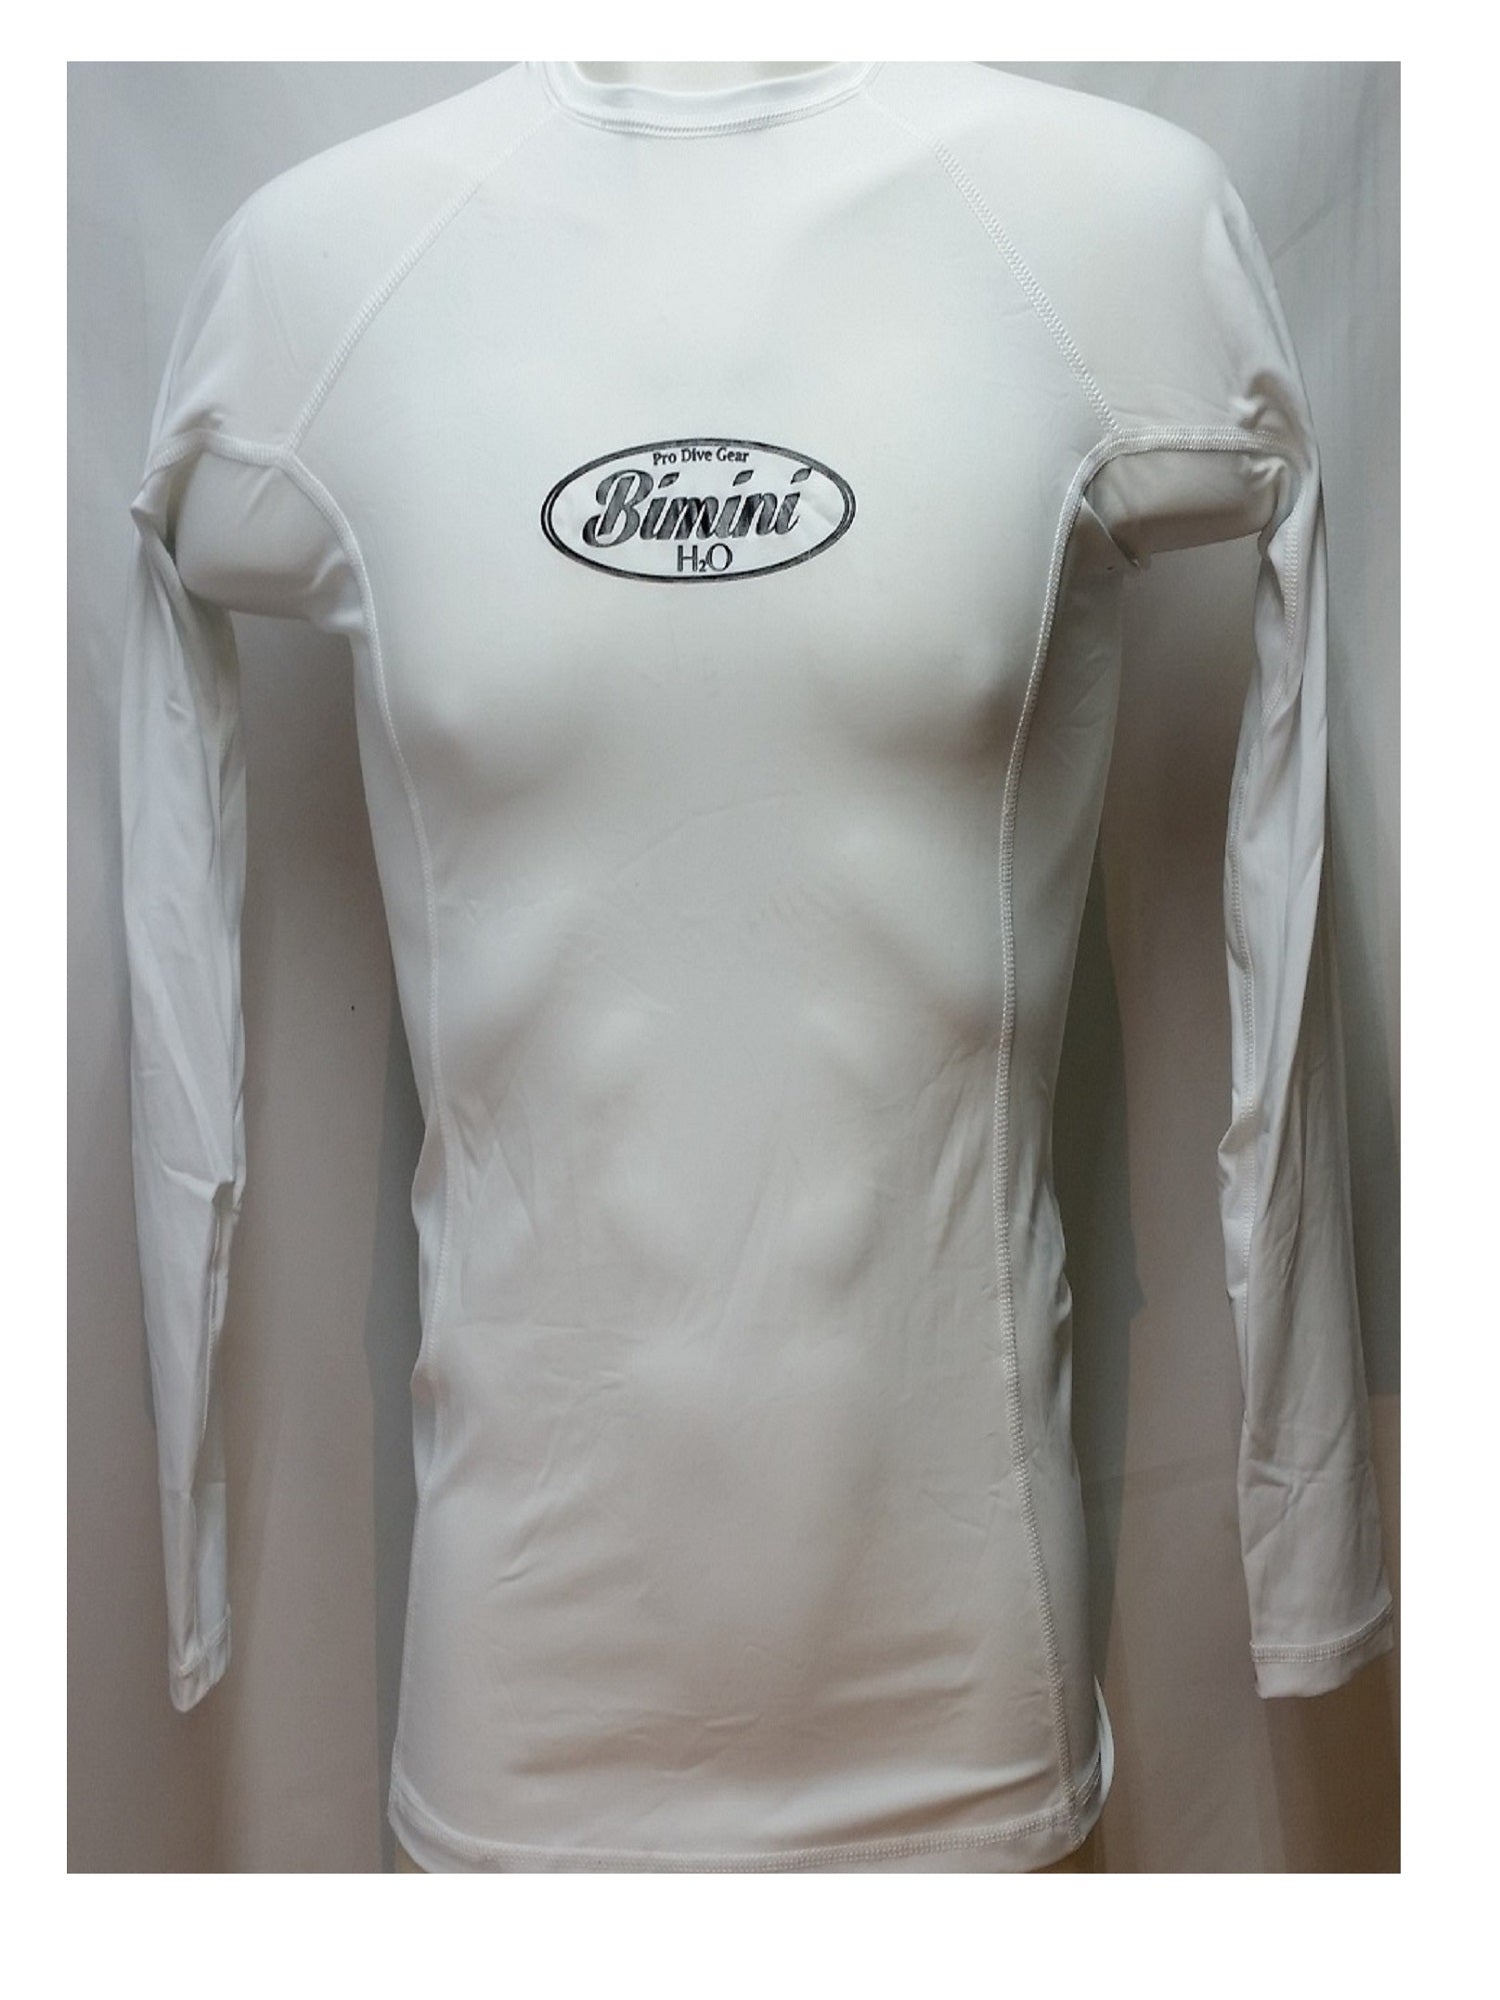 Bimini Dri-Fit Rash Guard Long Sleeve White Shirt, Large